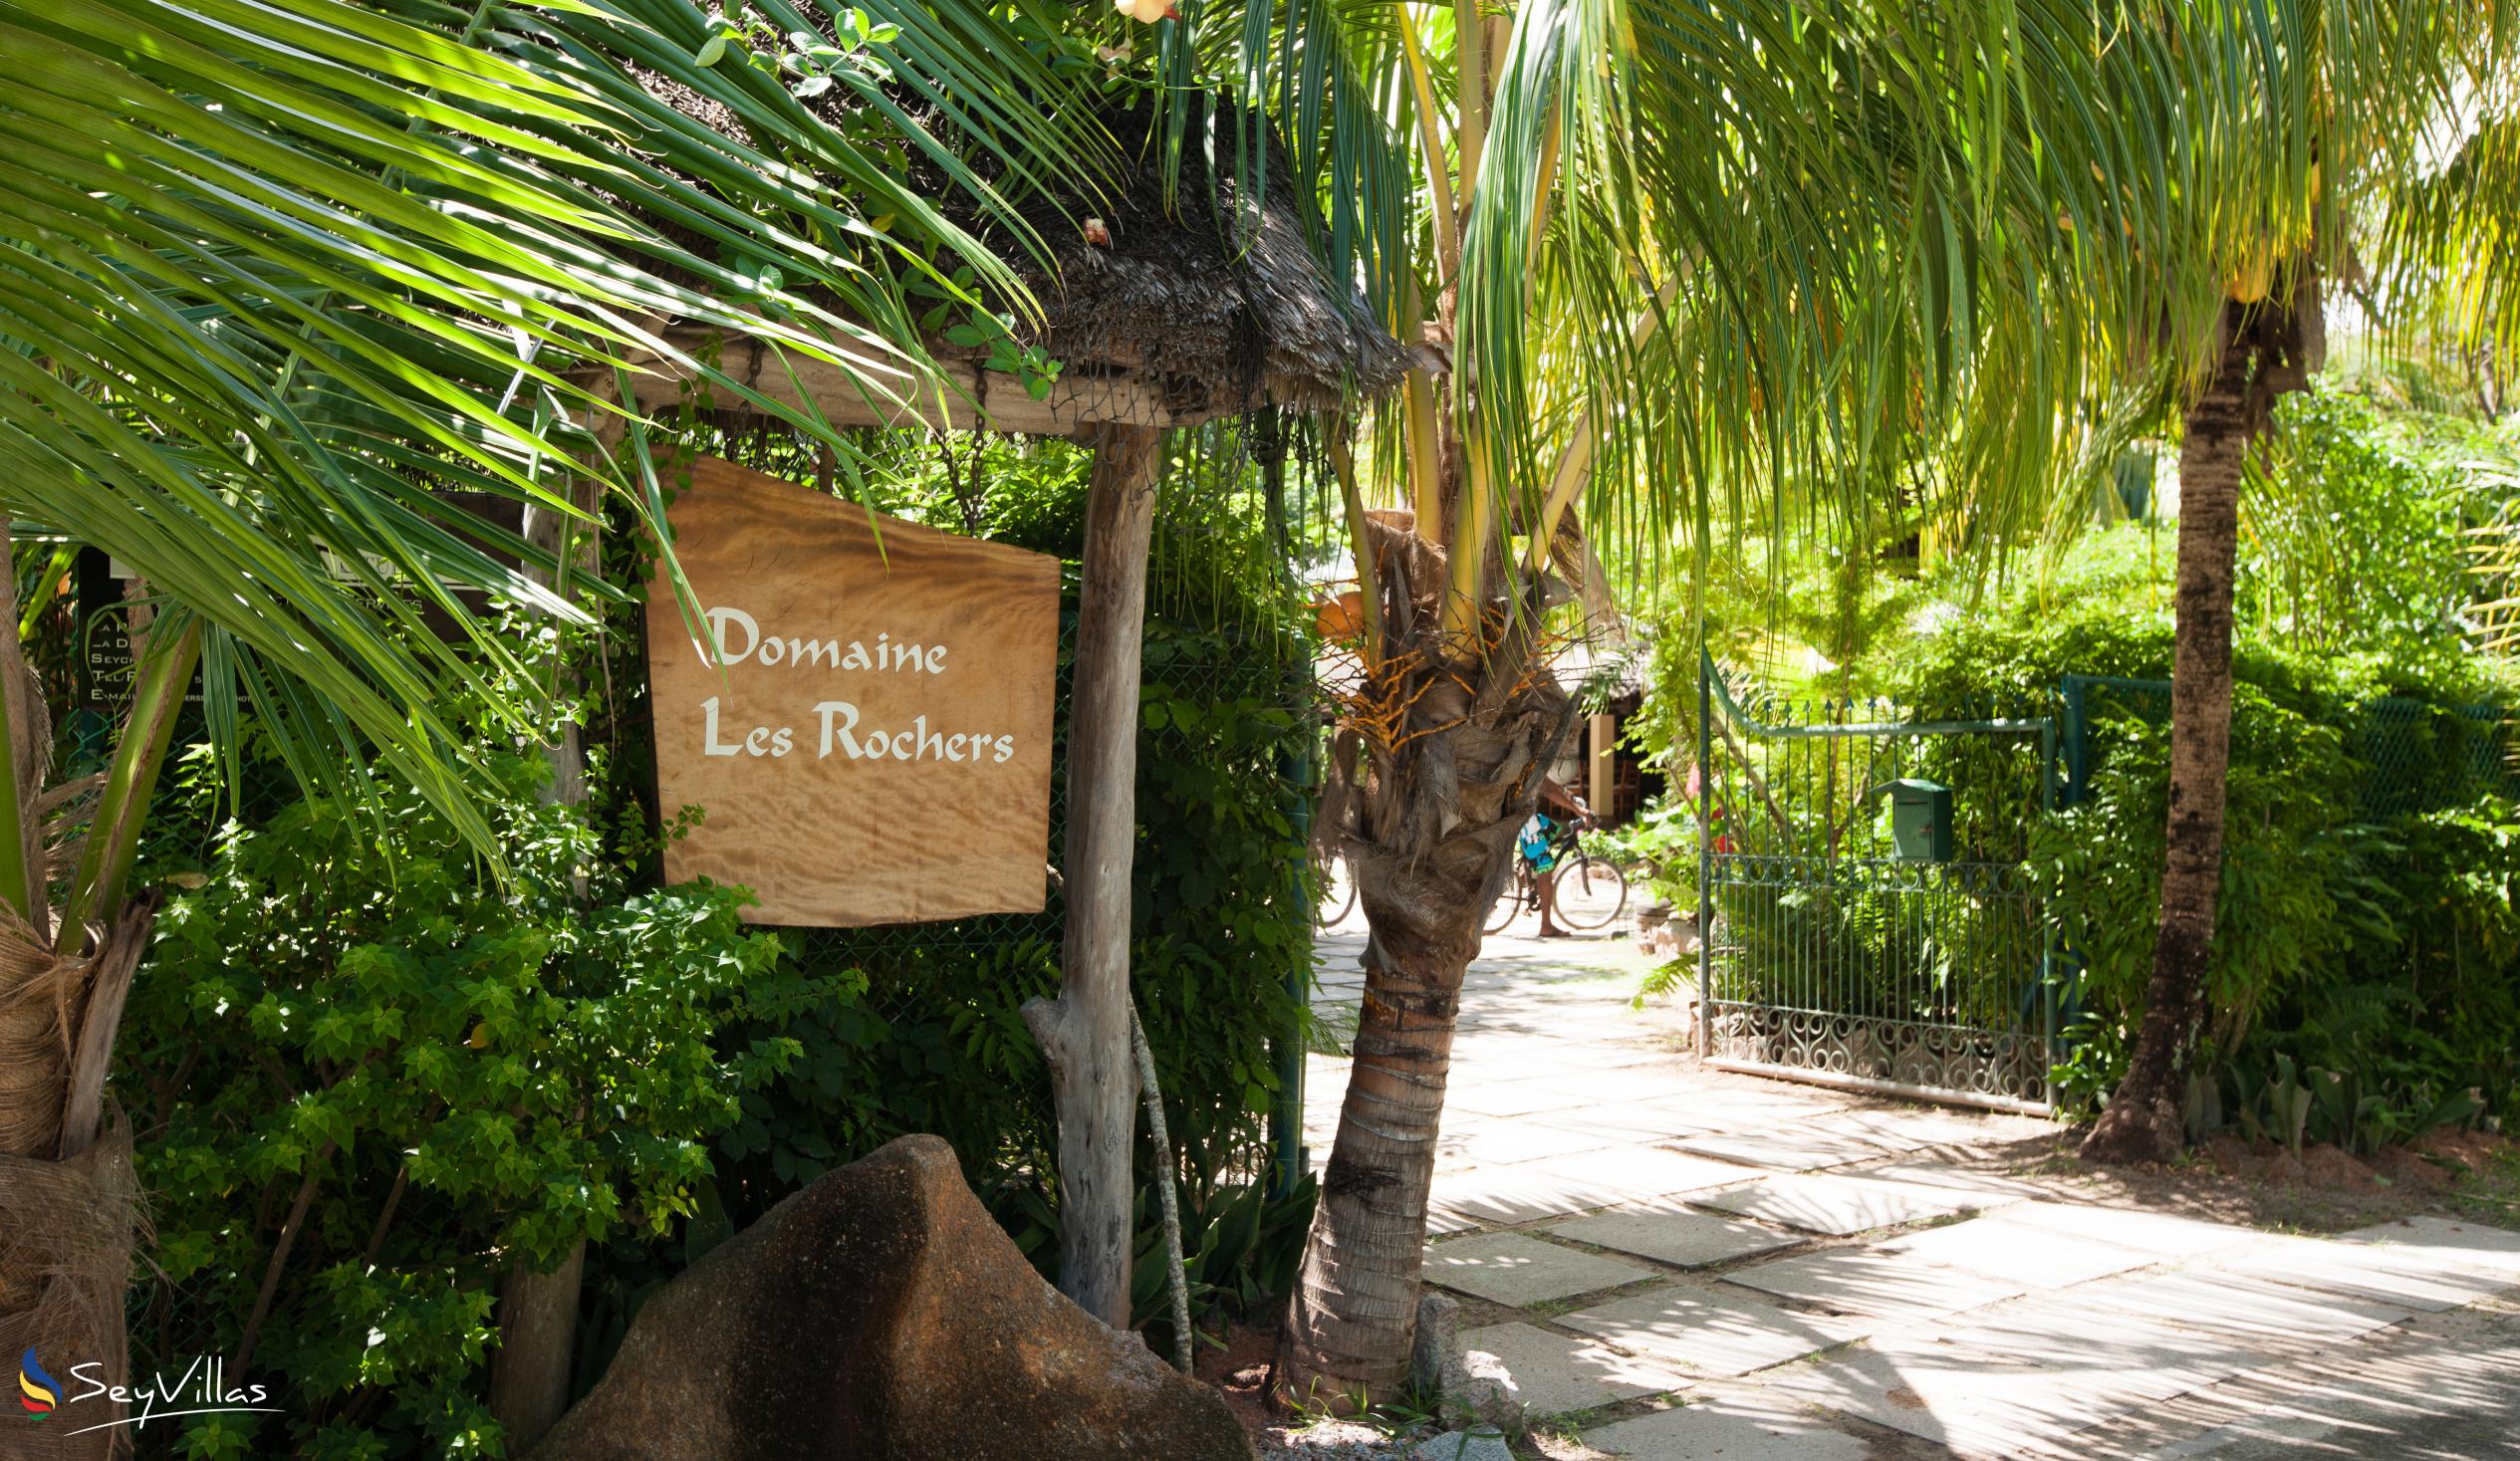 Photo 7: Domaine Les Rochers - Outdoor area - La Digue (Seychelles)